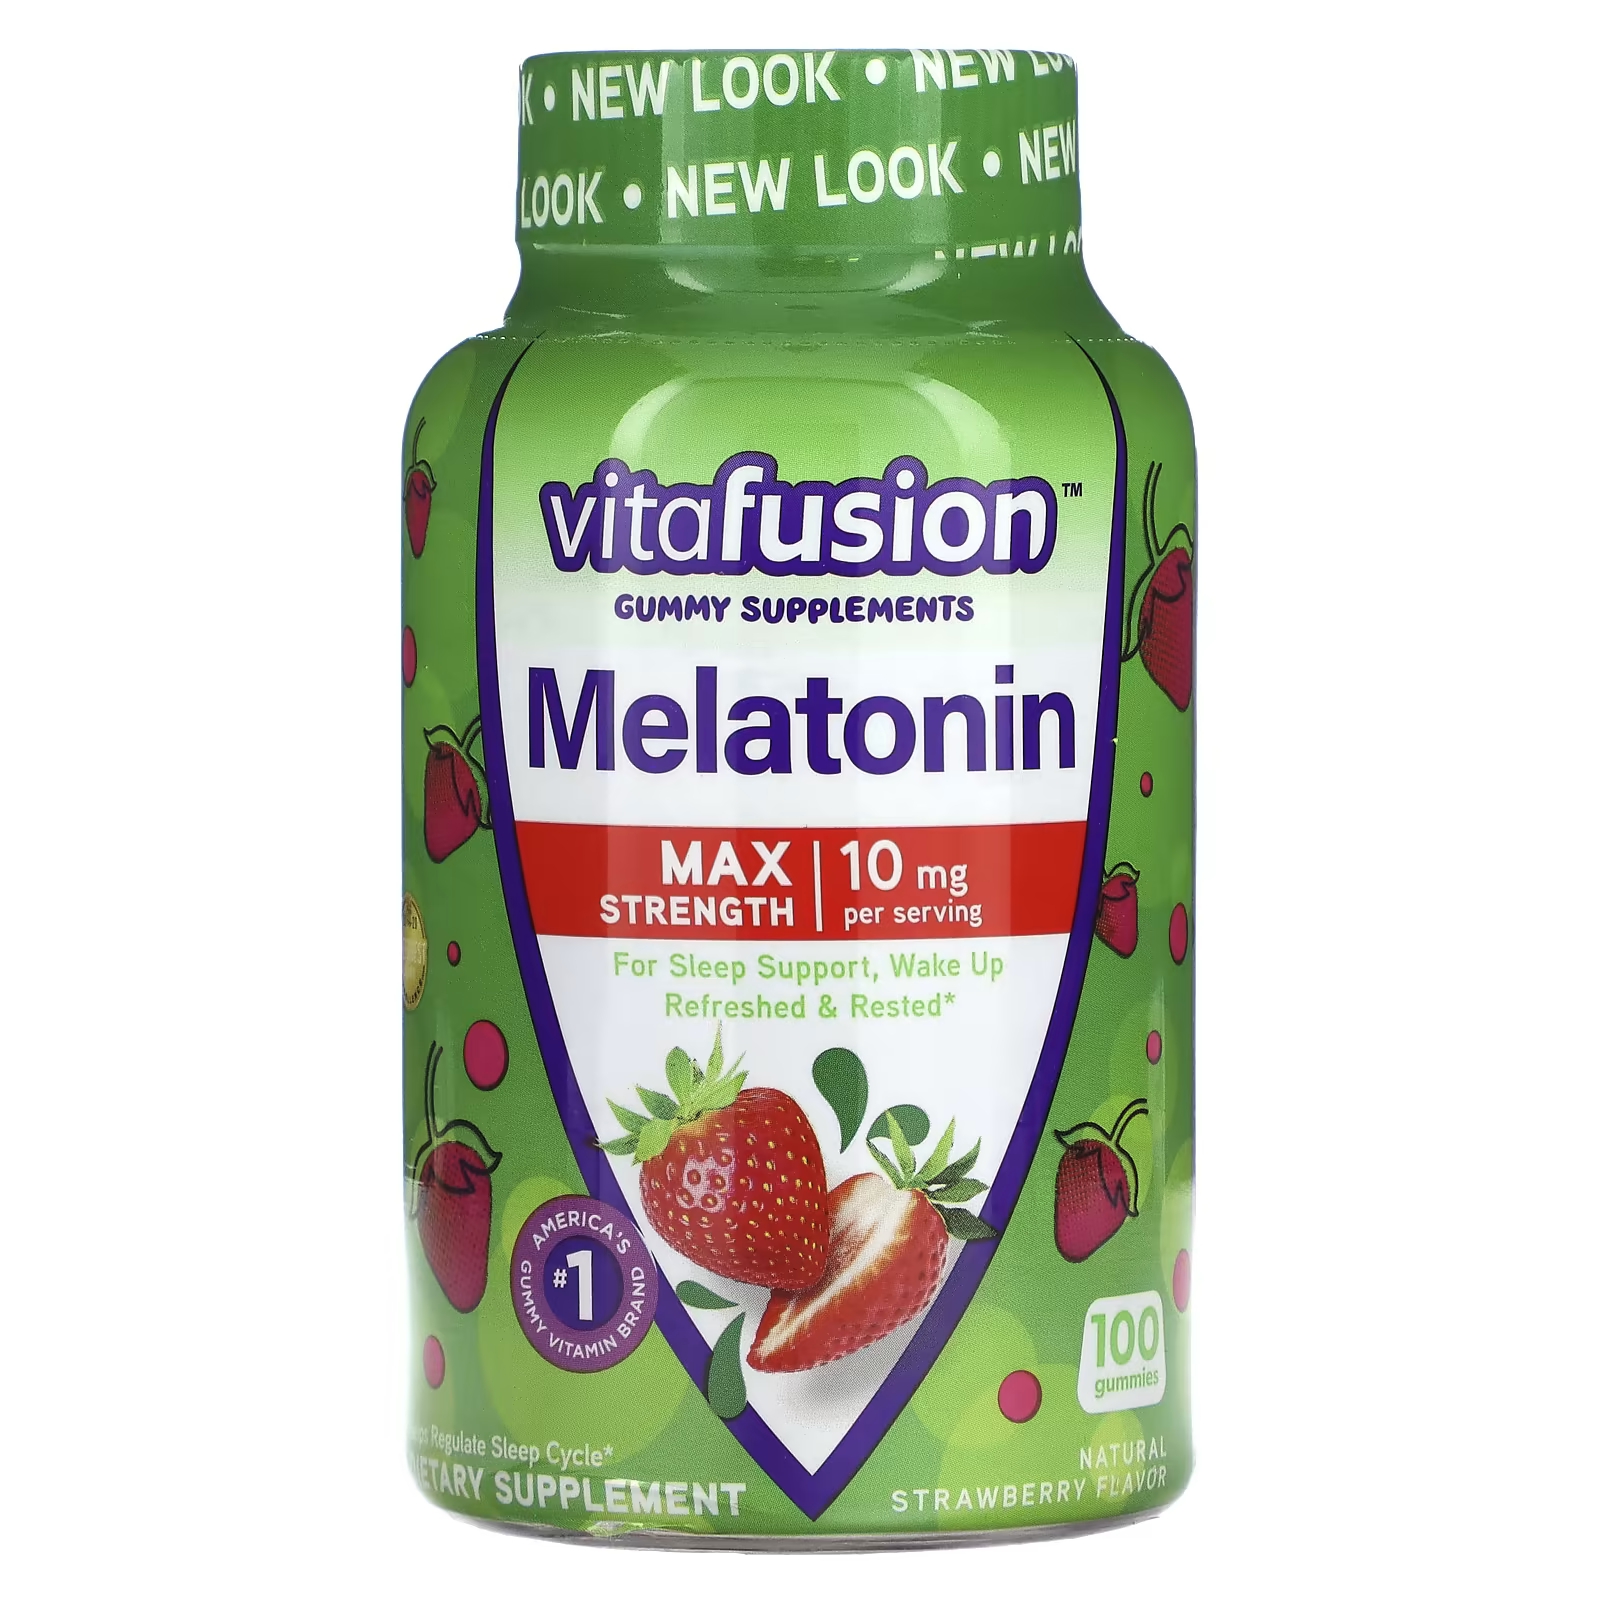 VitaFusion Max Strength Мелатонин Натуральная клубника 10 мг 100 жевательных таблеток (5 мг на жевательную конфету) nature s truth мелатонин для сна ягодное ассорти 5 мг 60 веганских жевательных мармеладок